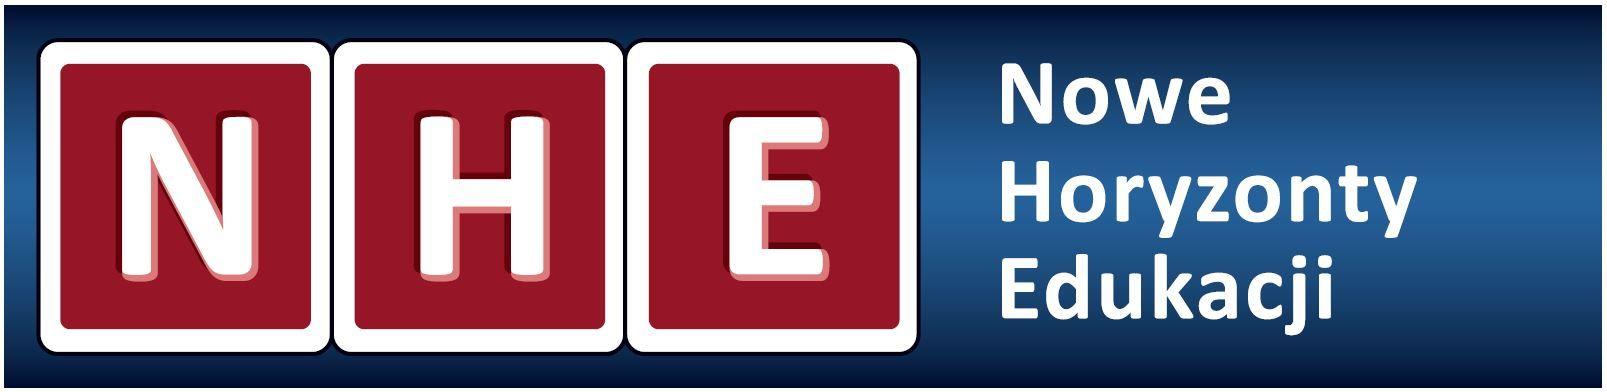 Nhe Logo - NHE logo proste – Księgarnia Nowych Horyzontów Edukacji